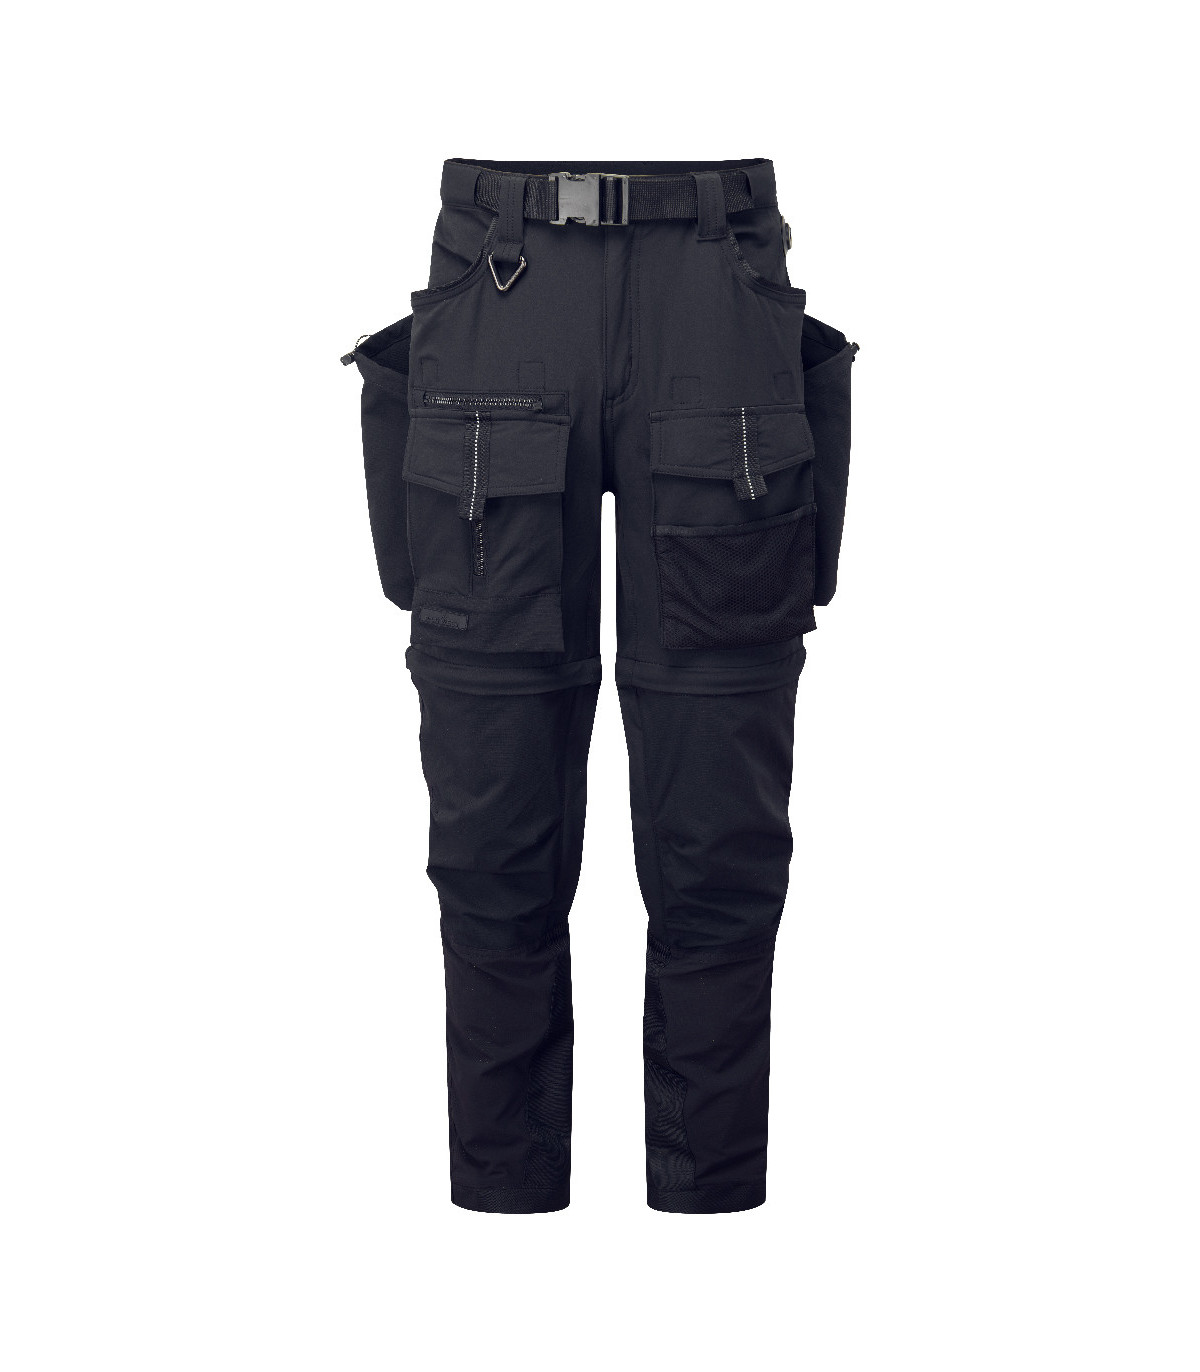 Pantalón de trabajo multibolsillos tejido elástico Ultimate Modular 3 en 1  PORTWEST BX321, comprar online